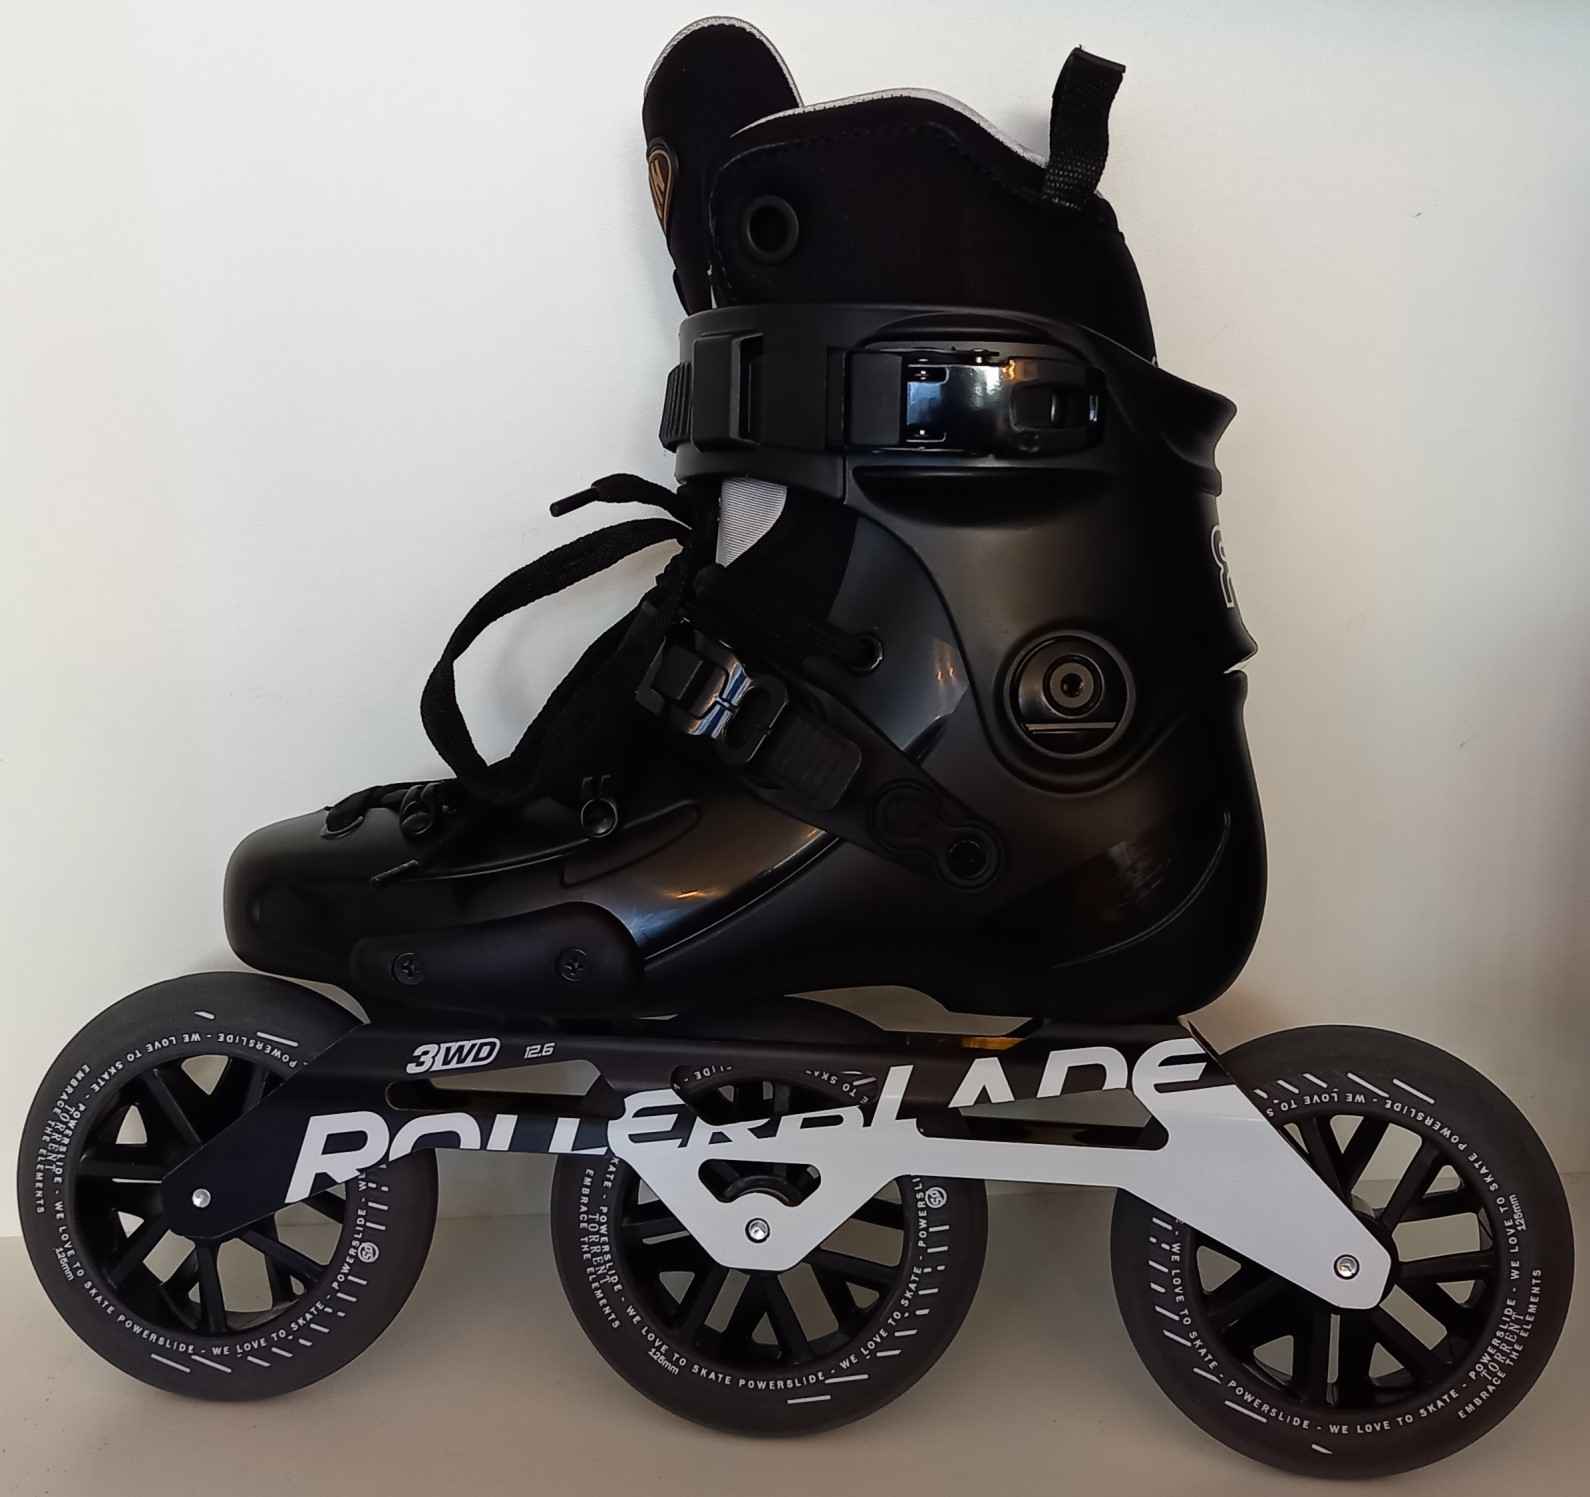 Un roller customisé aved un FR FR1 Intuition boot avec une platine Rollerblade et des roues Torrent pour la pluie avec des roulements résistants à l'eau